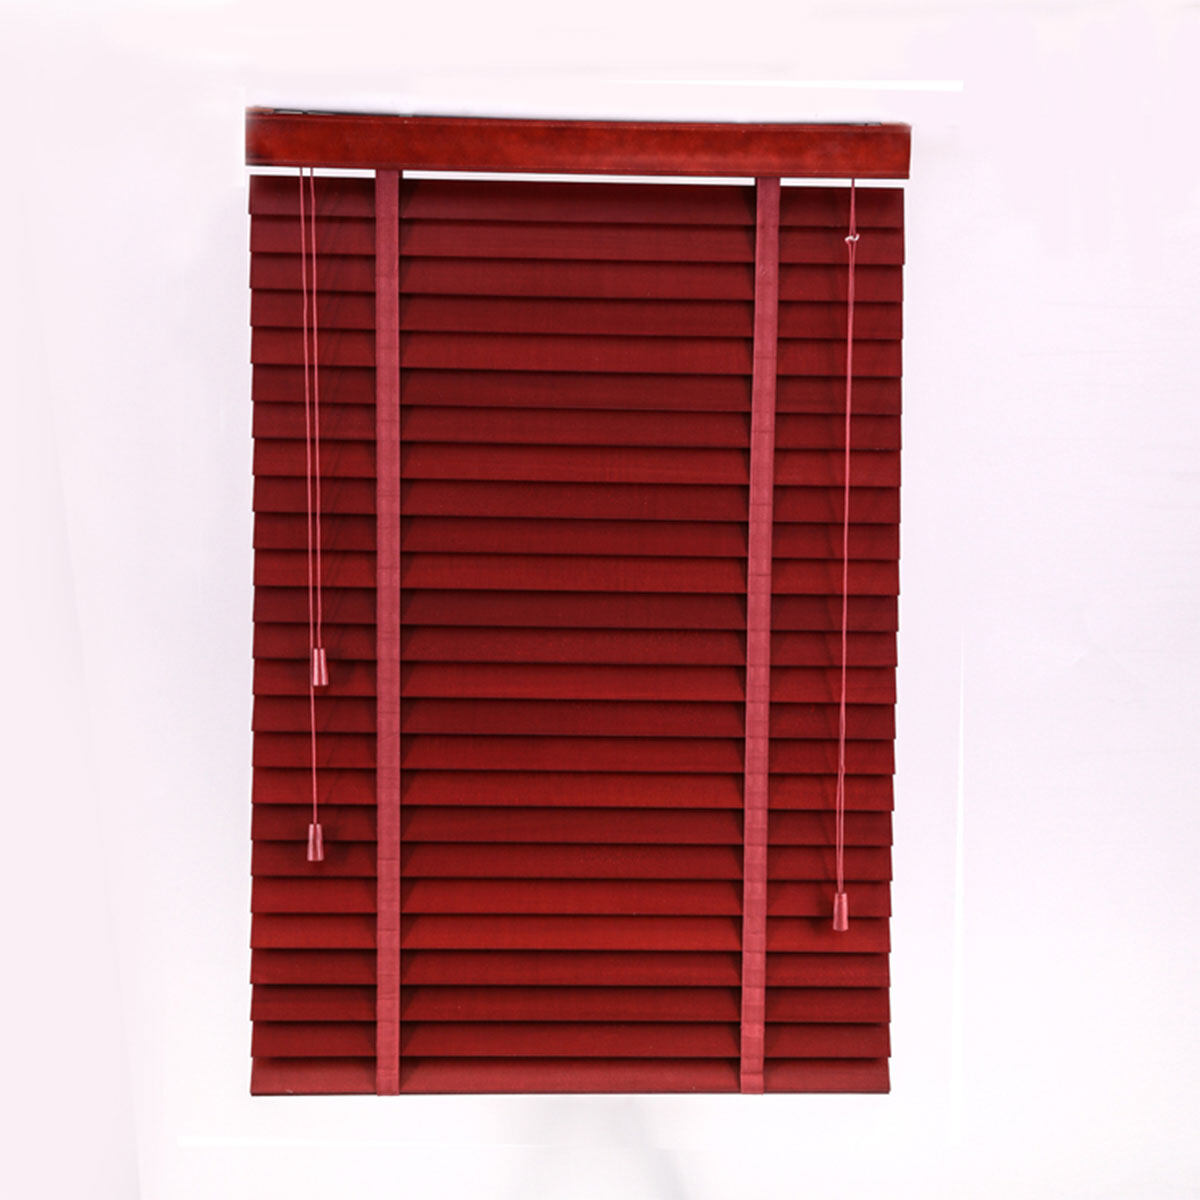 50mm black wooden venetian blinds, cordless wooden venetian blinds, custom wooden venetian blinds, dark wood venetian blind